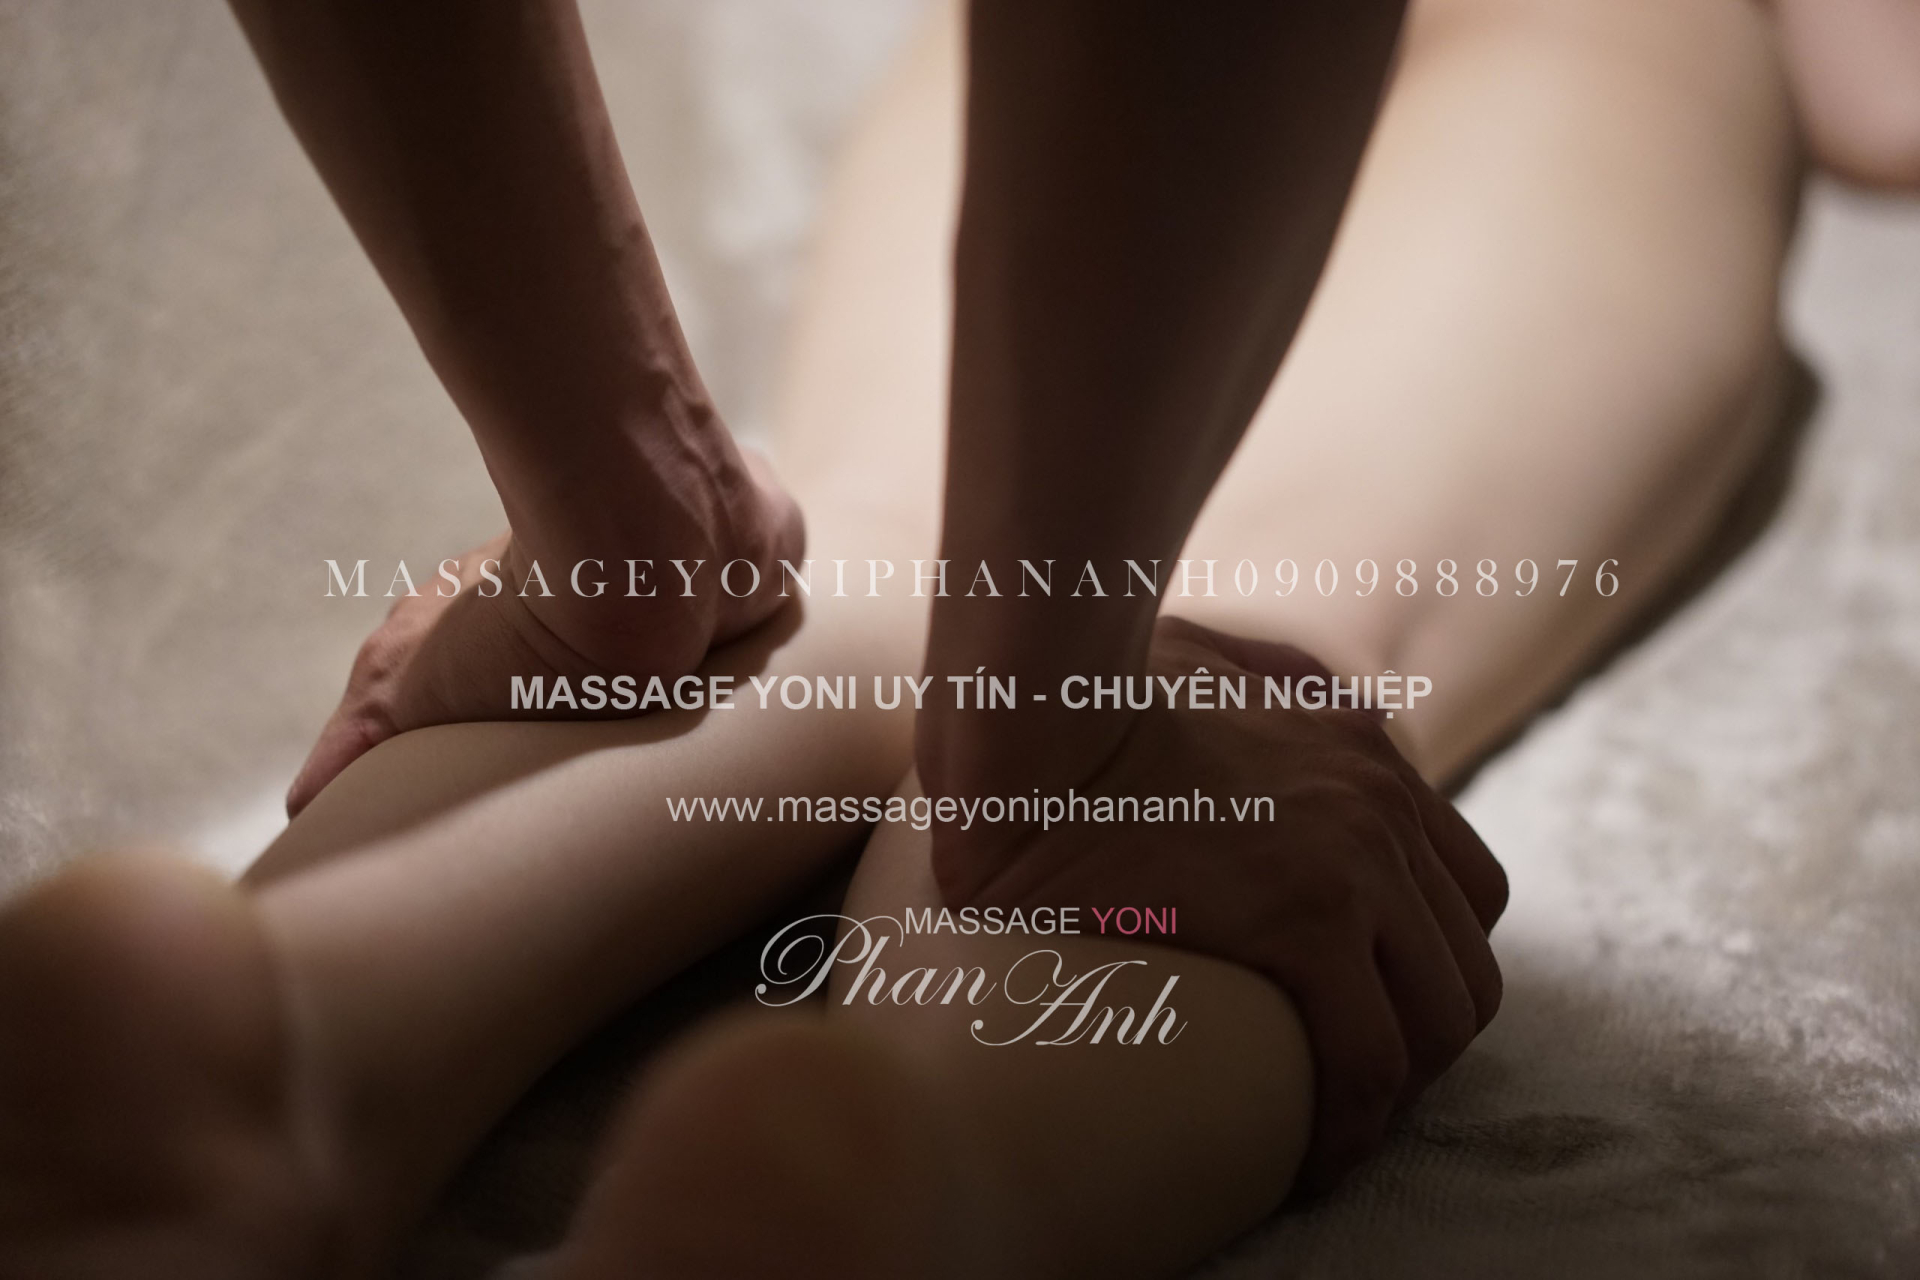 địa chỉ massage yoni chuyên nghiệp và uy tín tại Sài Gòn